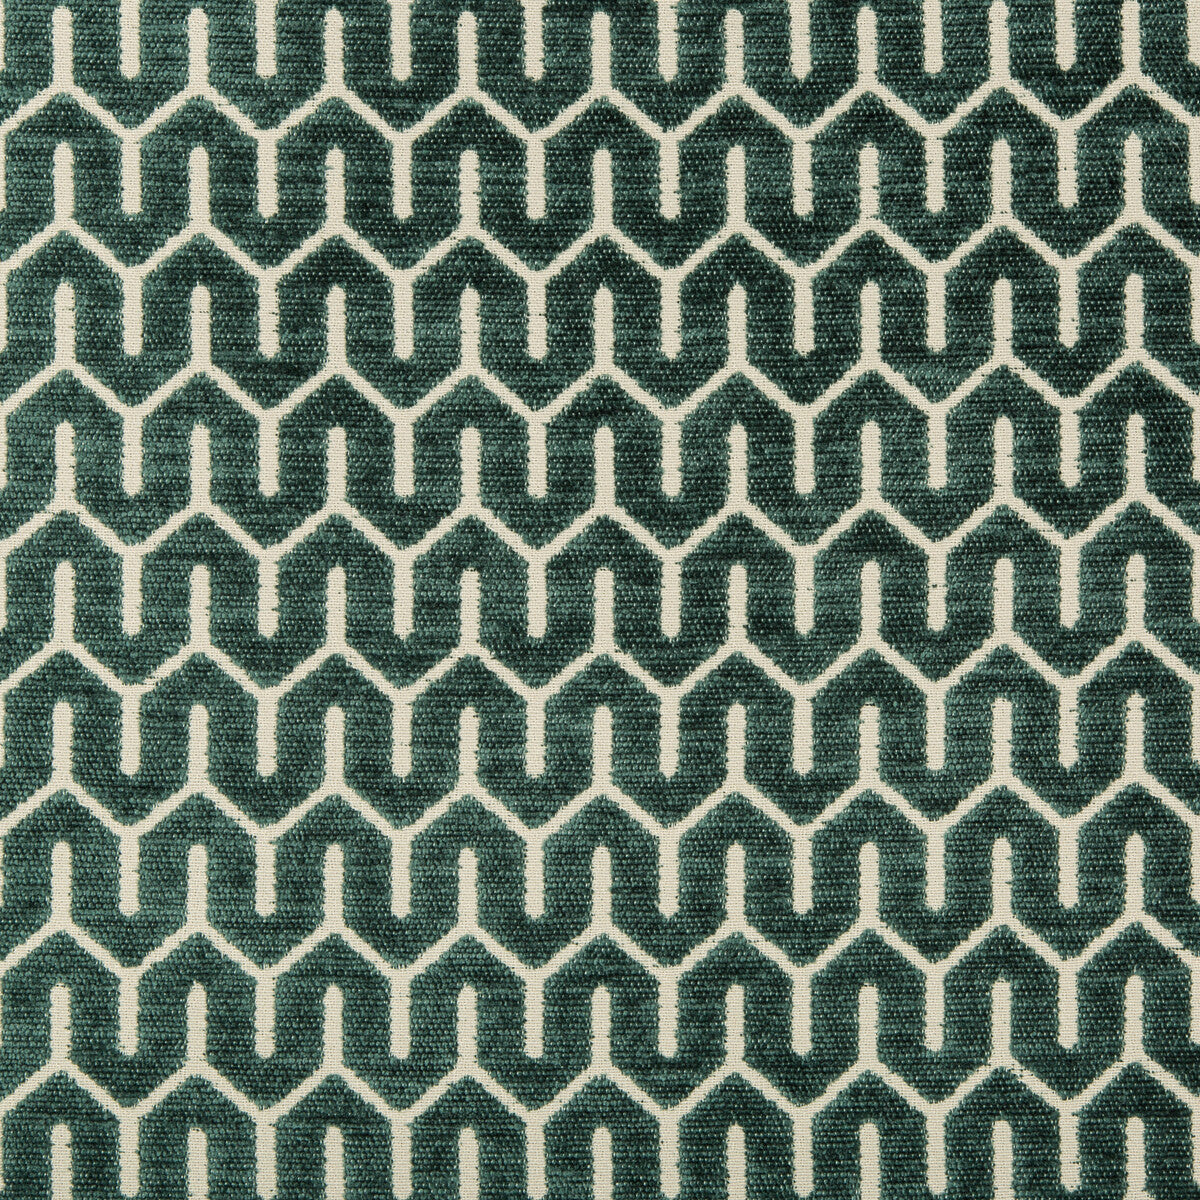 Kravet Design fabric in 35706-3 color - pattern 35706.3.0 - by Kravet Design